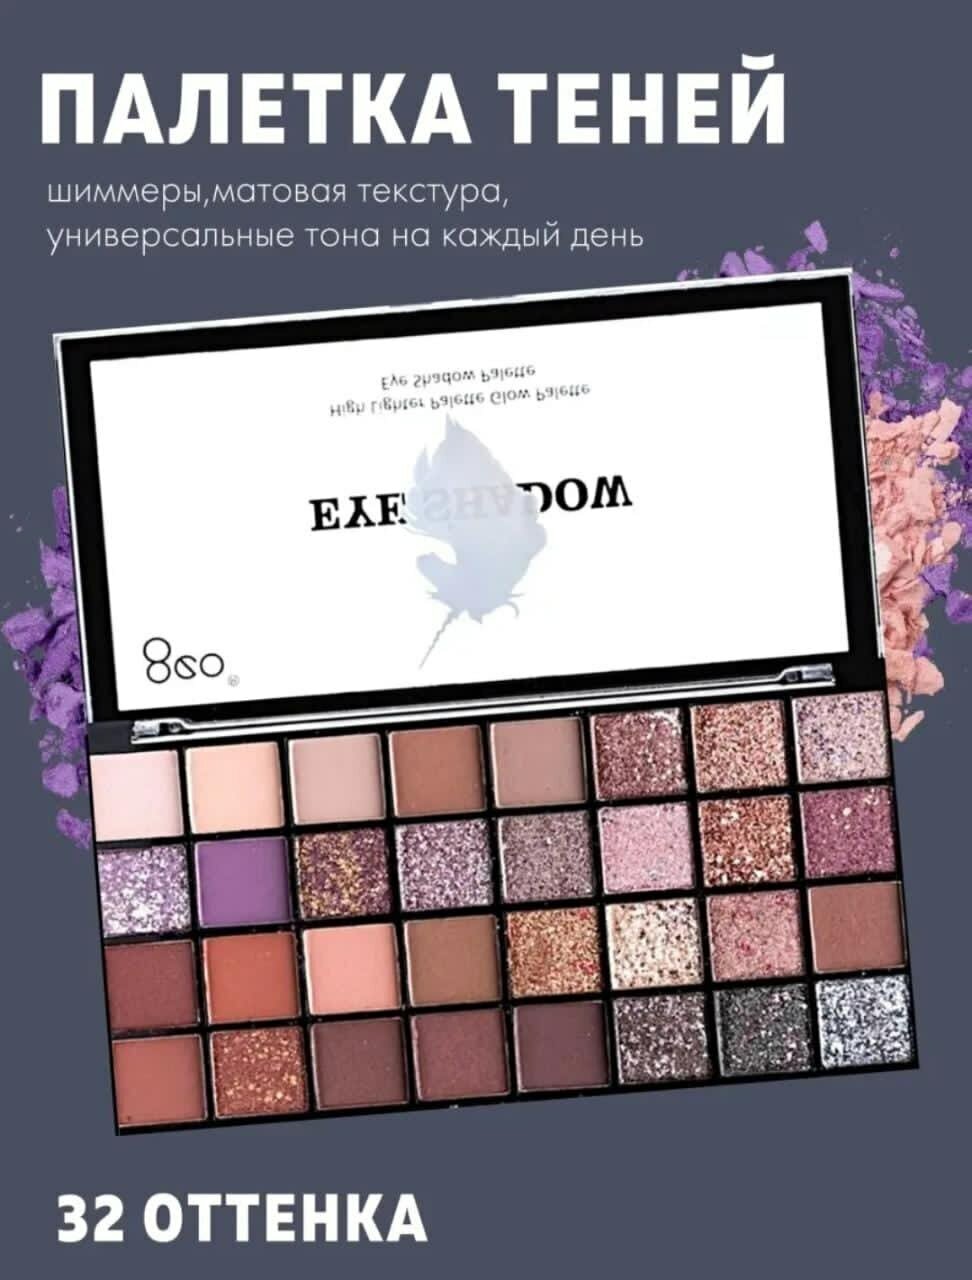 Палетка теней для макияжа век 32 цвета купить товары для красоты с быстрой доставкой на Яндекс Маркете